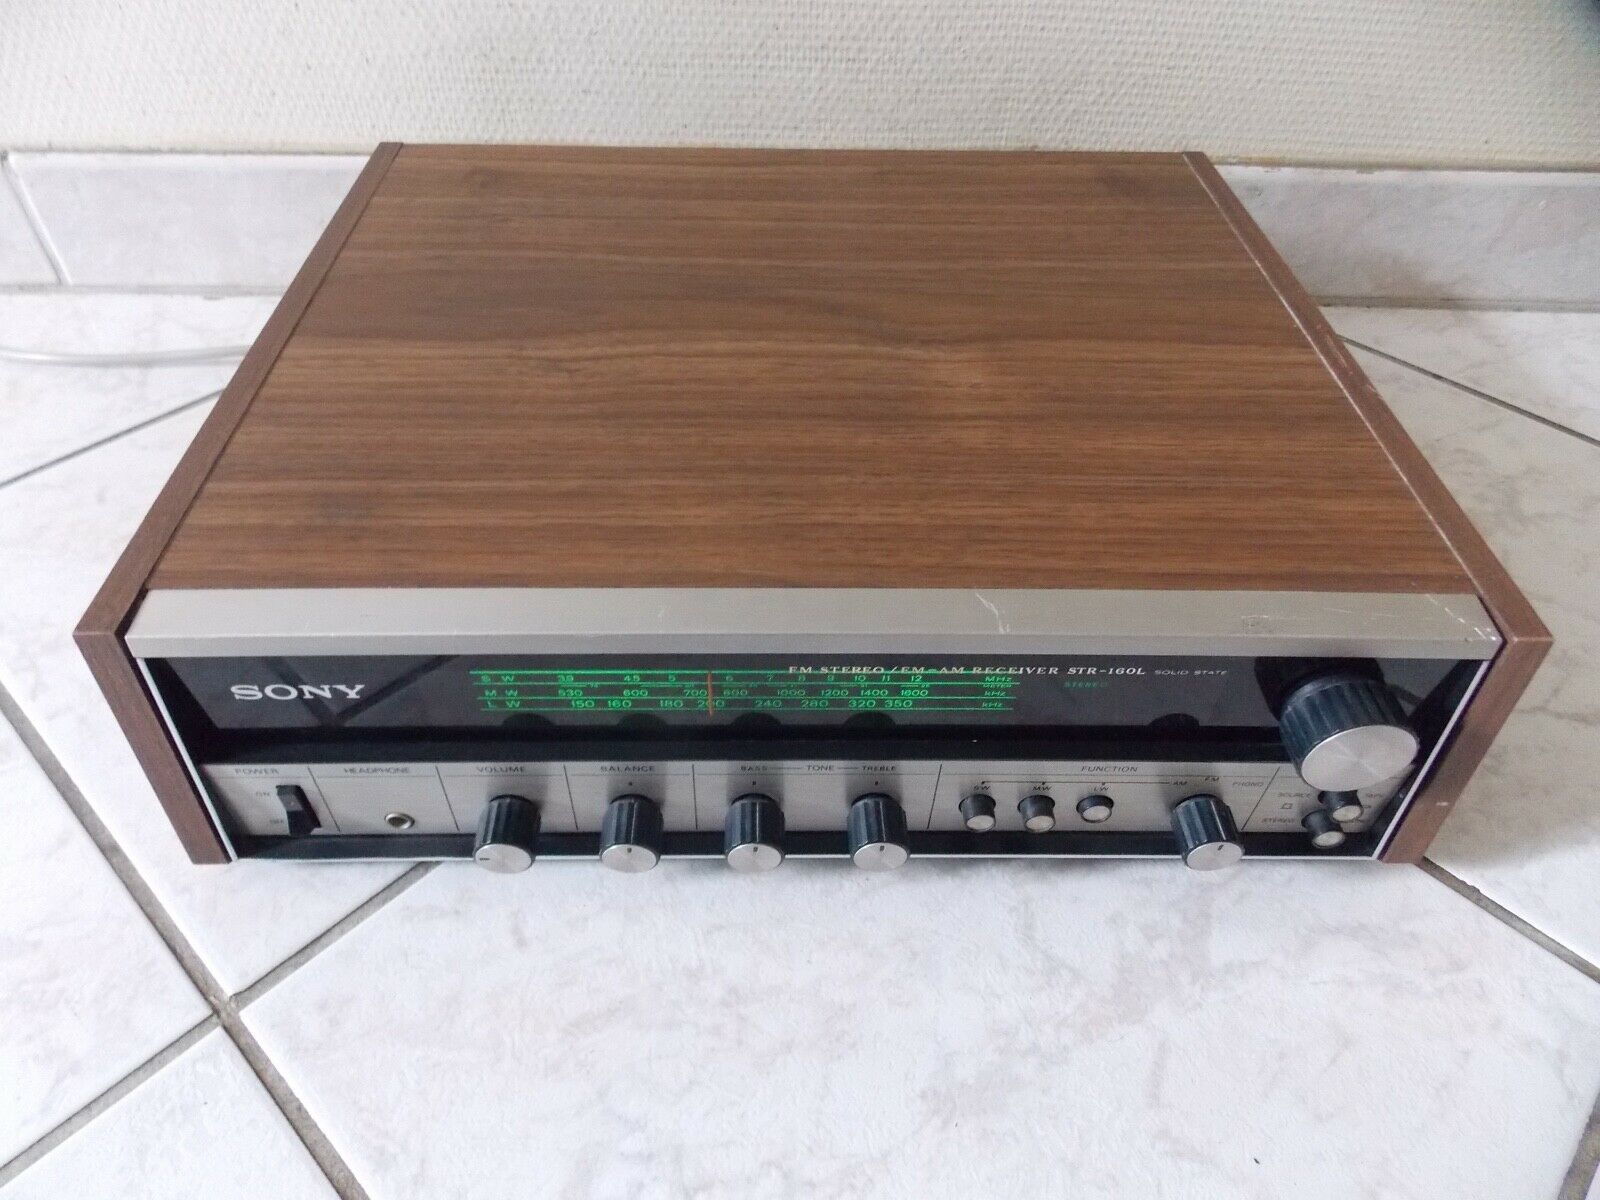 amplificateur amplifier sony STR-160L vintage occasion